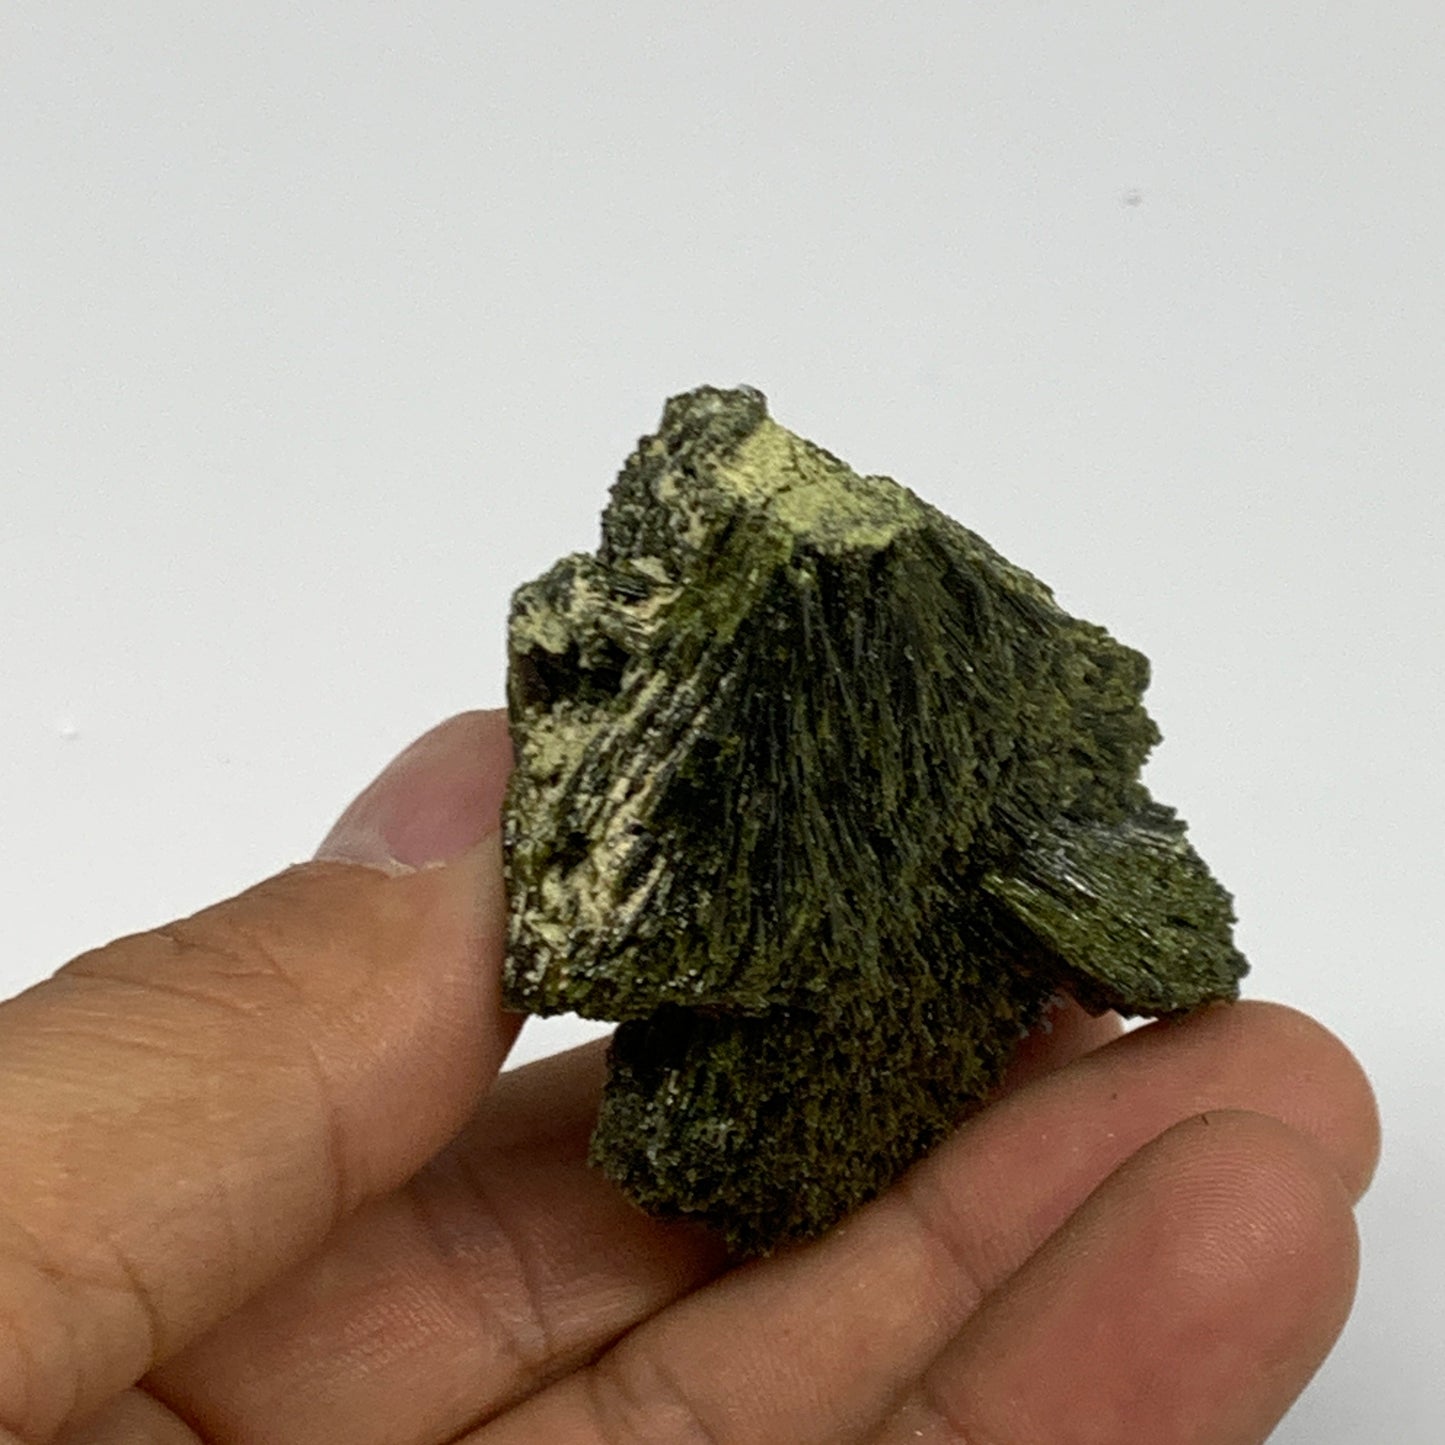 60.3g,2.1"x1.6"x0.8",Green Epidote Custer/Leaf Mineral Specimen @Pakistan,B27601